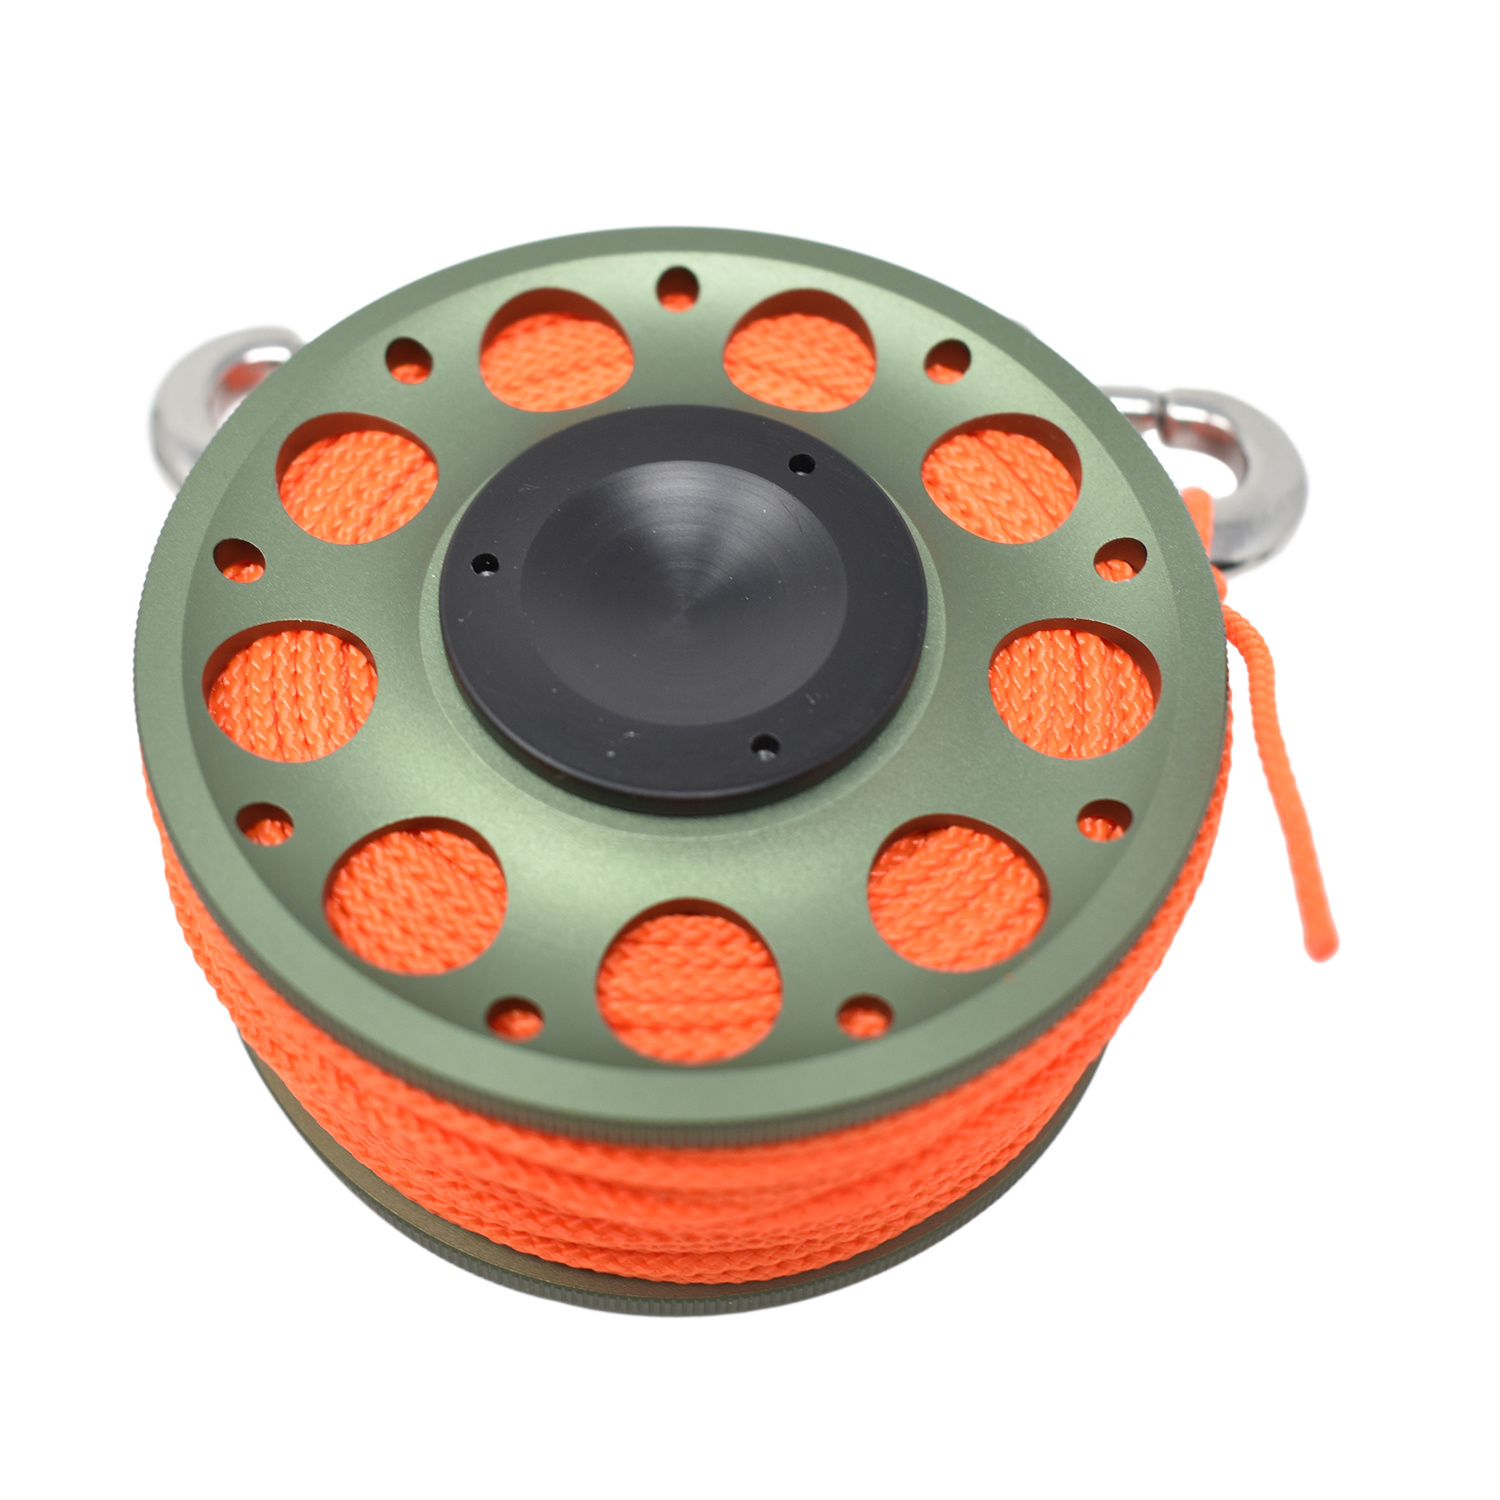 Aluminum Finger Spool 100ft Dive Reel w/ Spinning Holder, Green/Orange - image 2 of 4